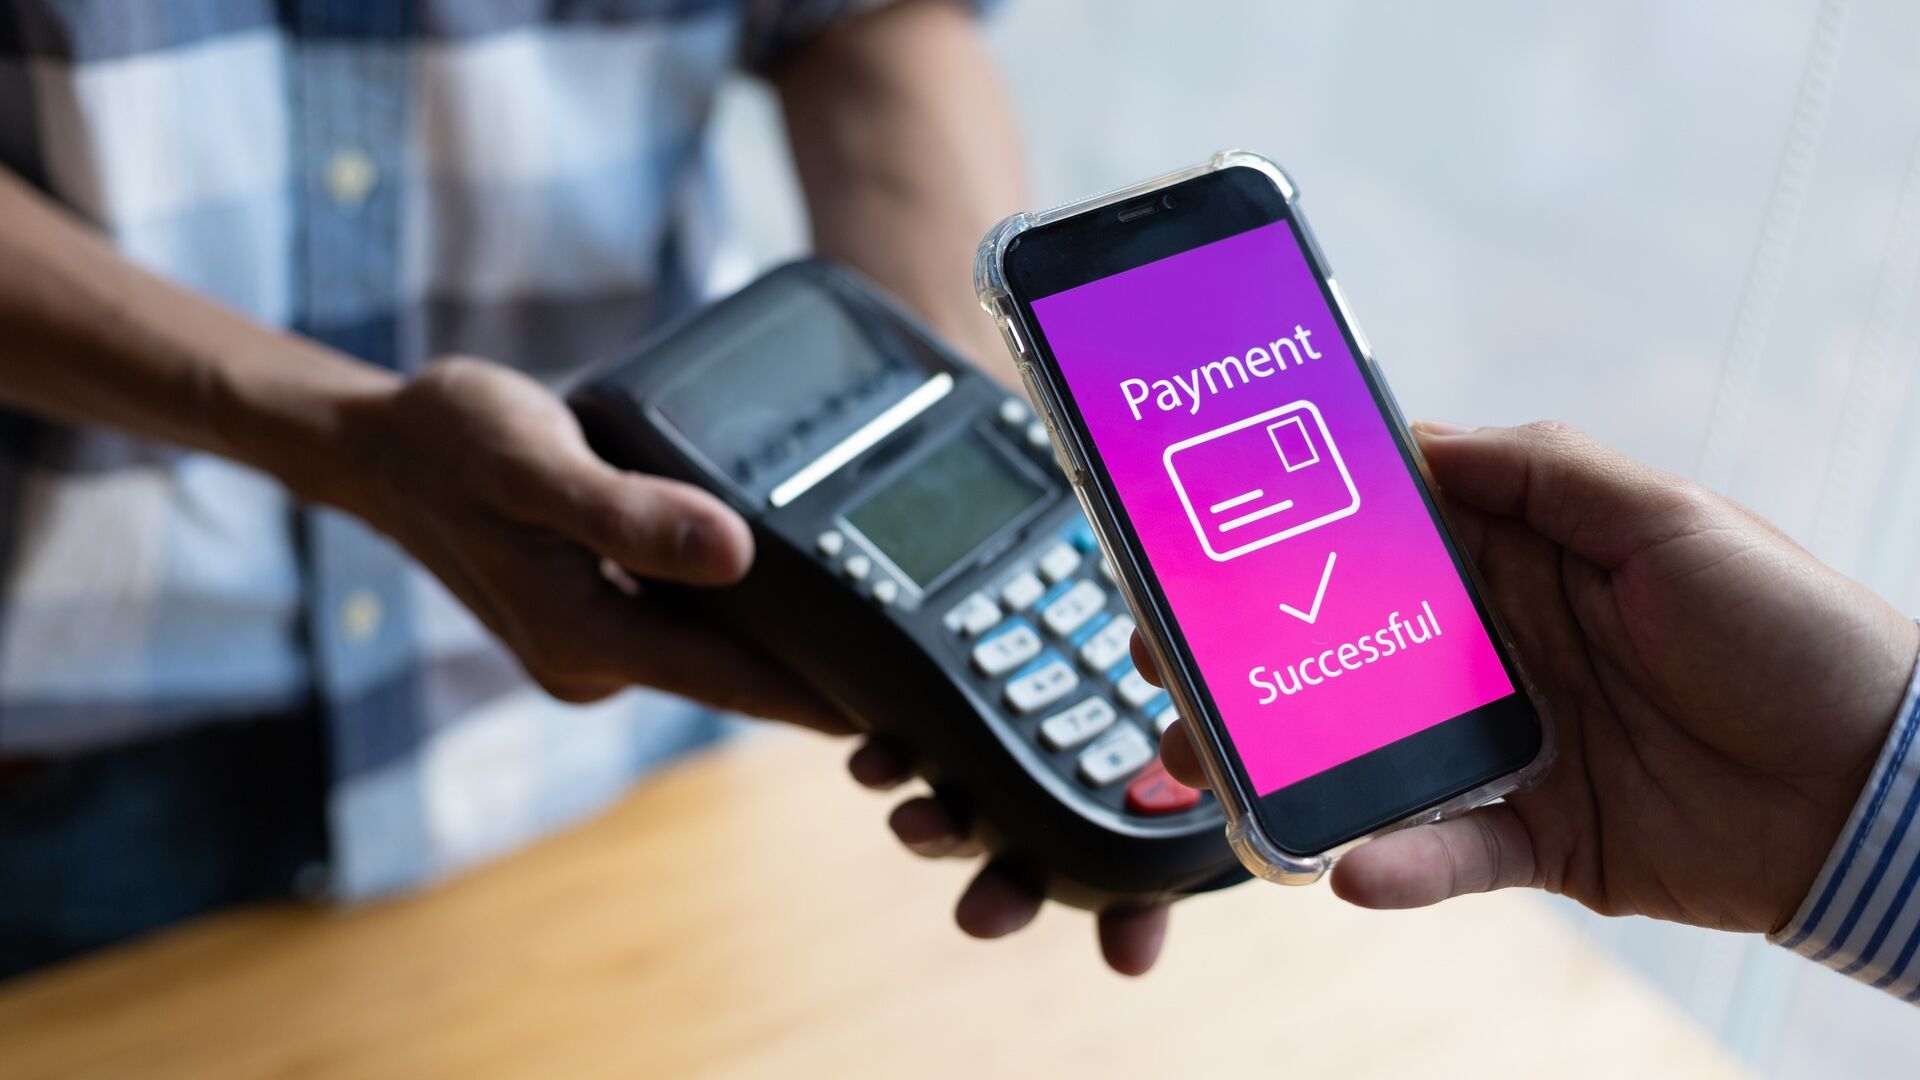 Pagaments mòbils: els beneficis dels pagaments mòbils s'han de comunicar de manera eficaç i eliminar els problemes de seguretat, per tal de guanyar la confiança del consumidor.